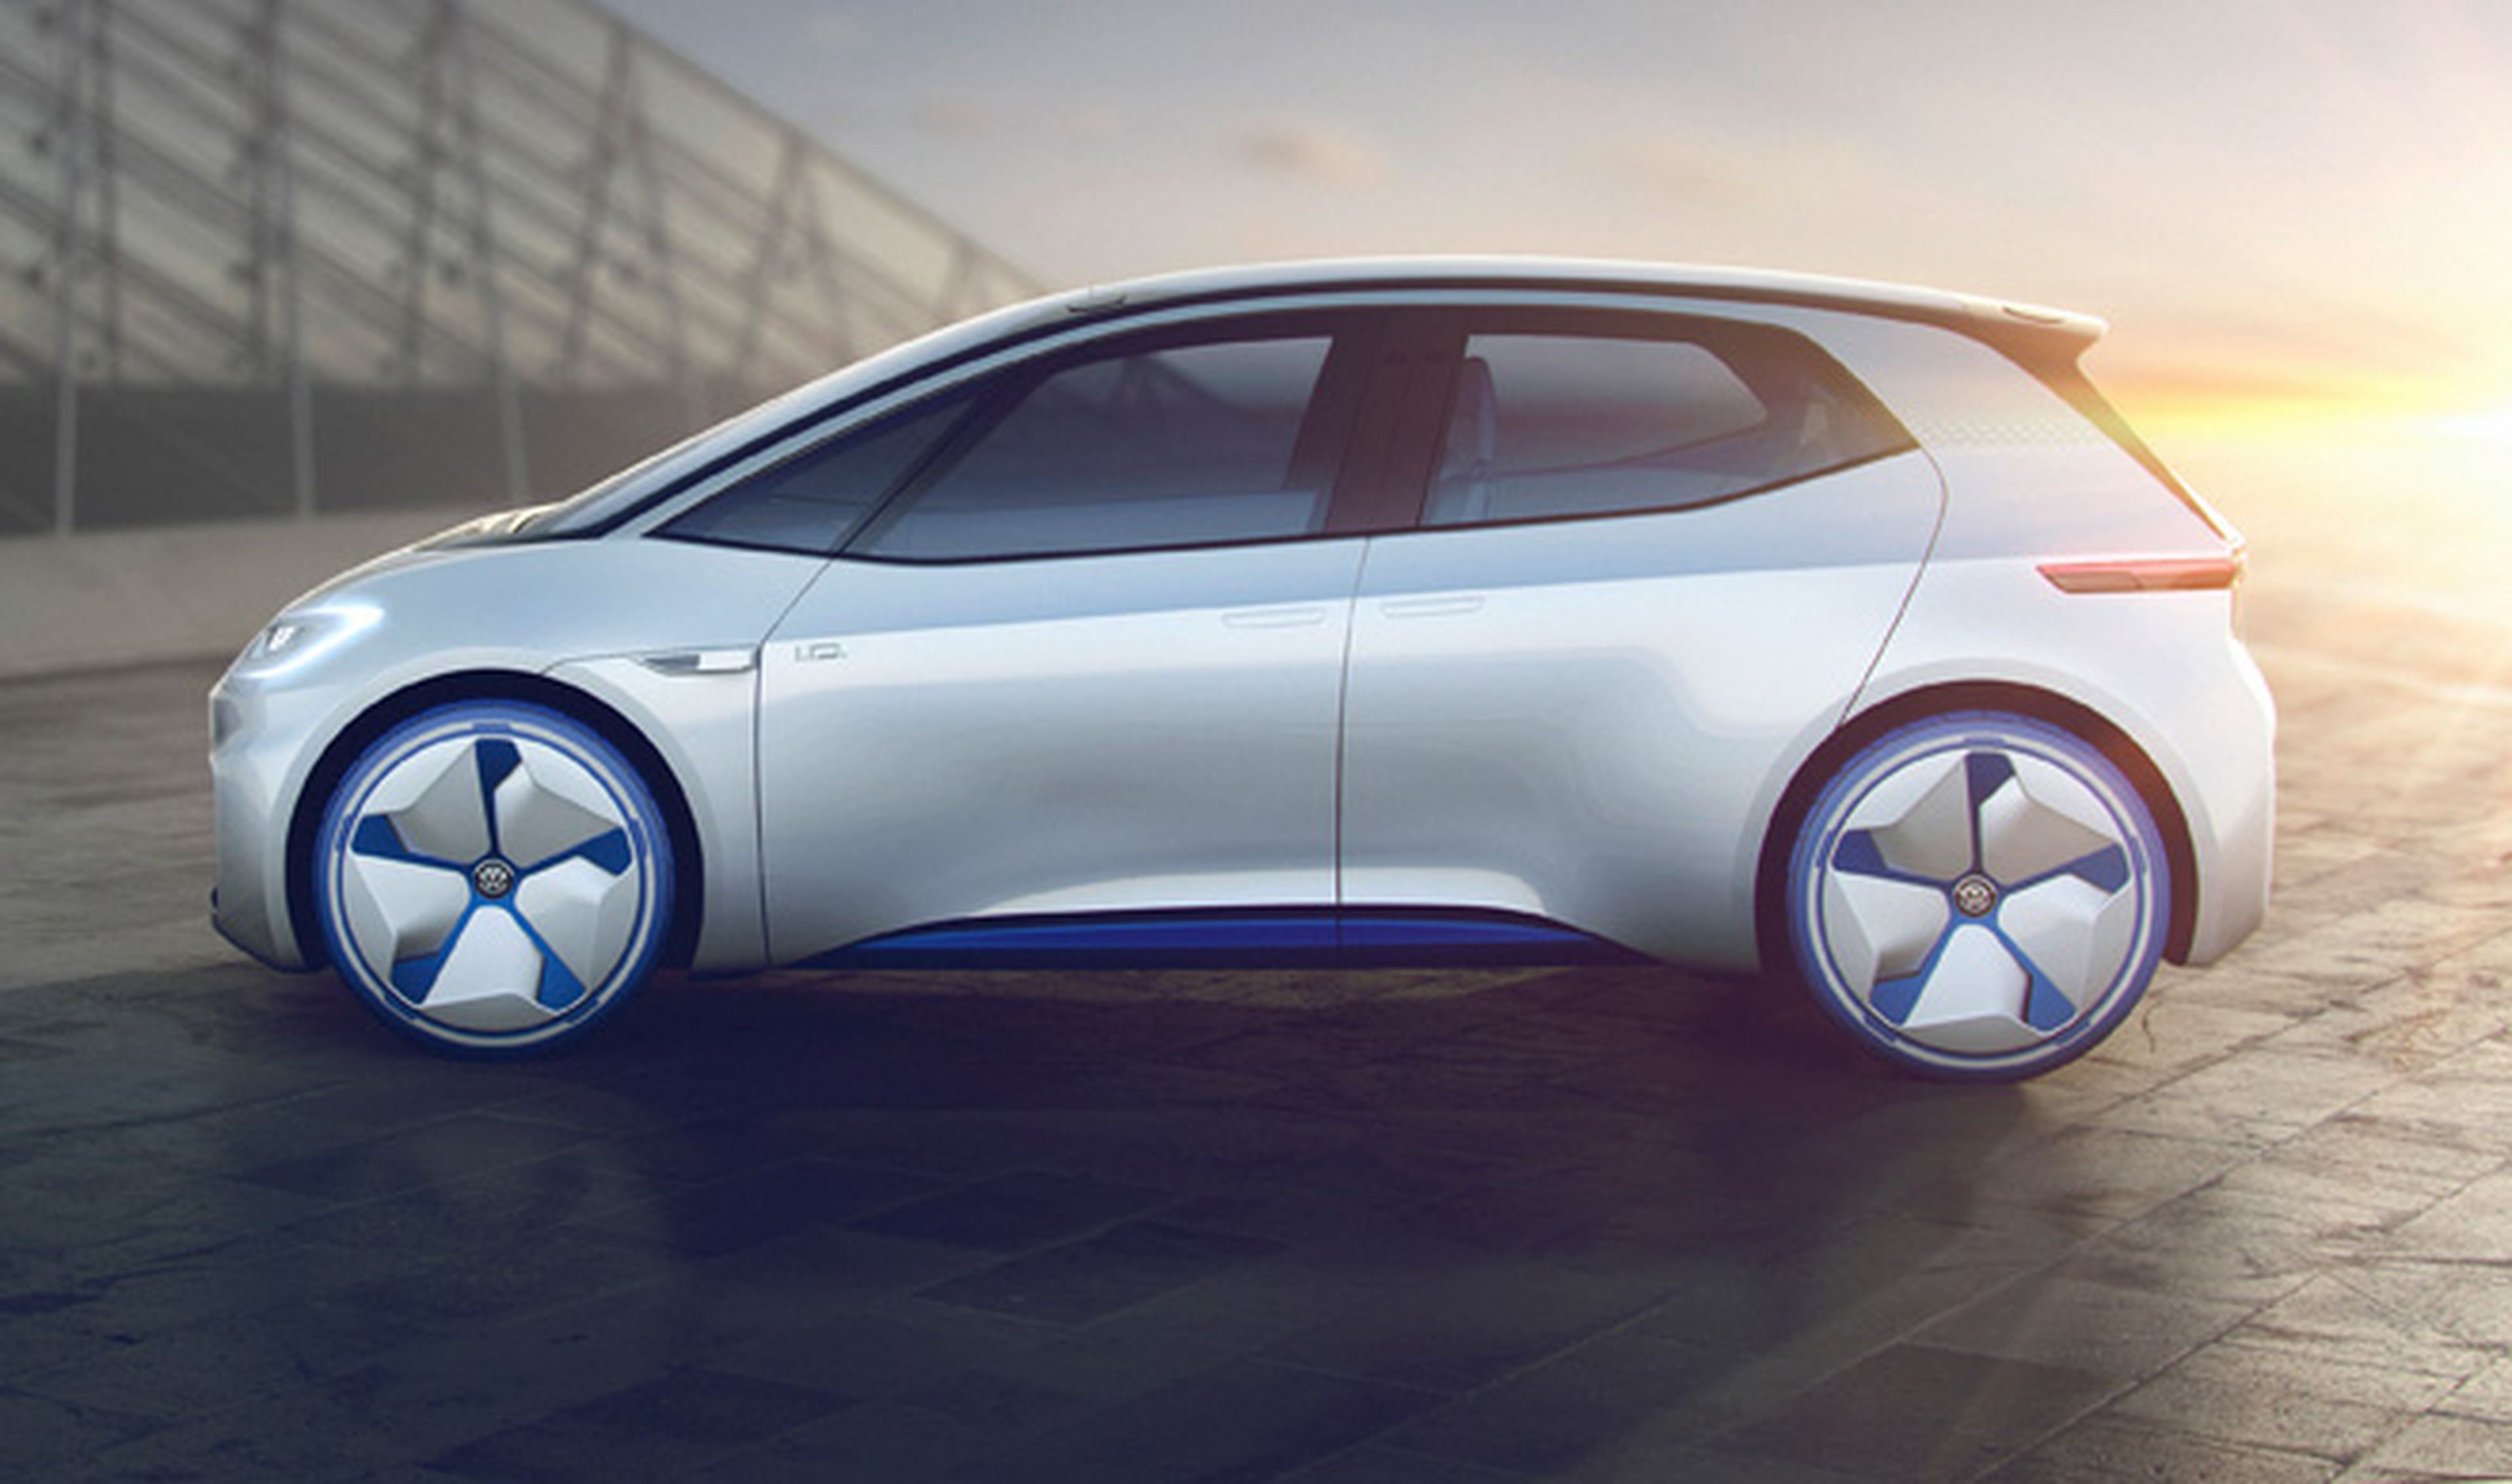 Volkswagen planea el compacto deportivo eléctrico I.D. GTI